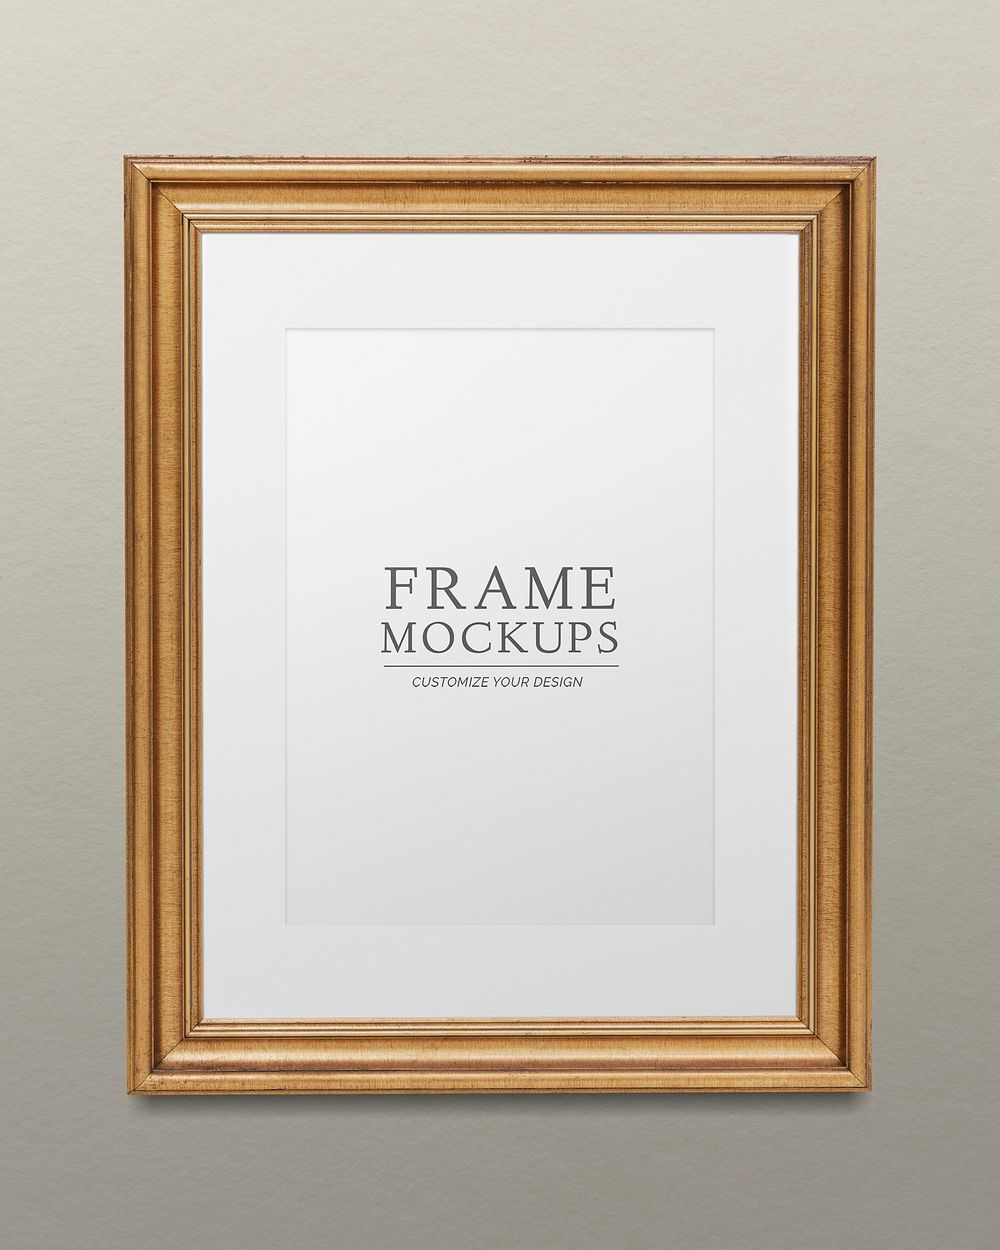 Gold picture frame mockup illustration